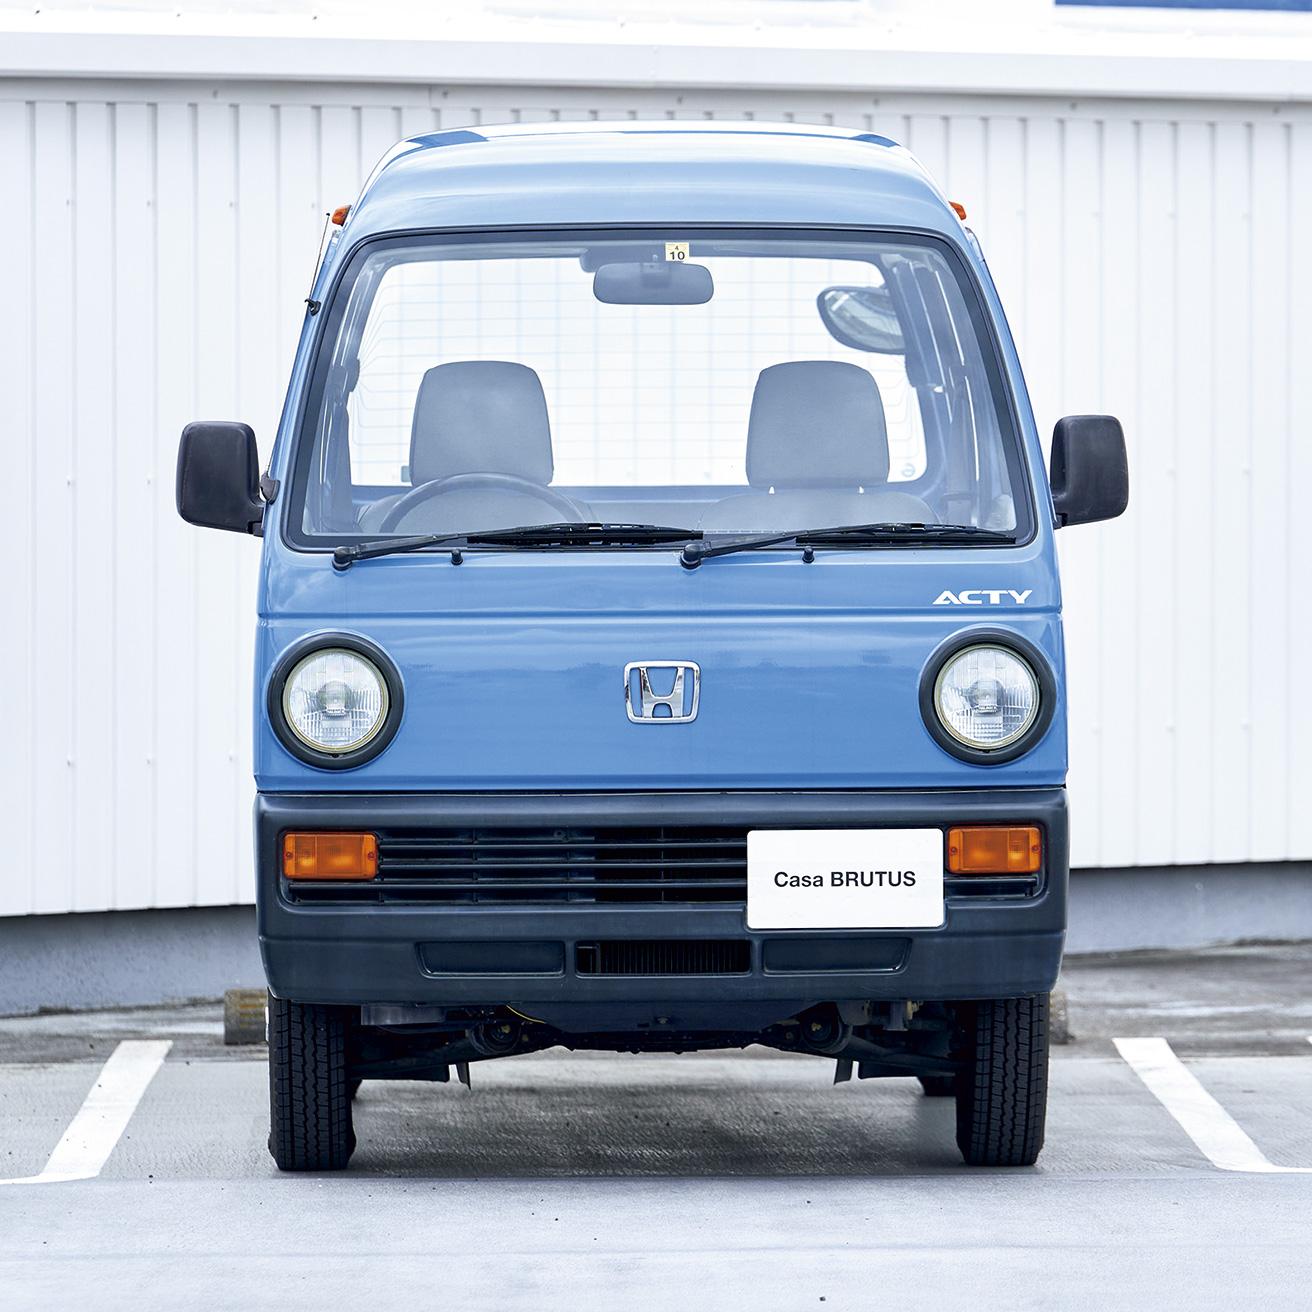 1980年代末には廃れていた円形ヘッドライトを採用。四角い車体との対比が際立つ。